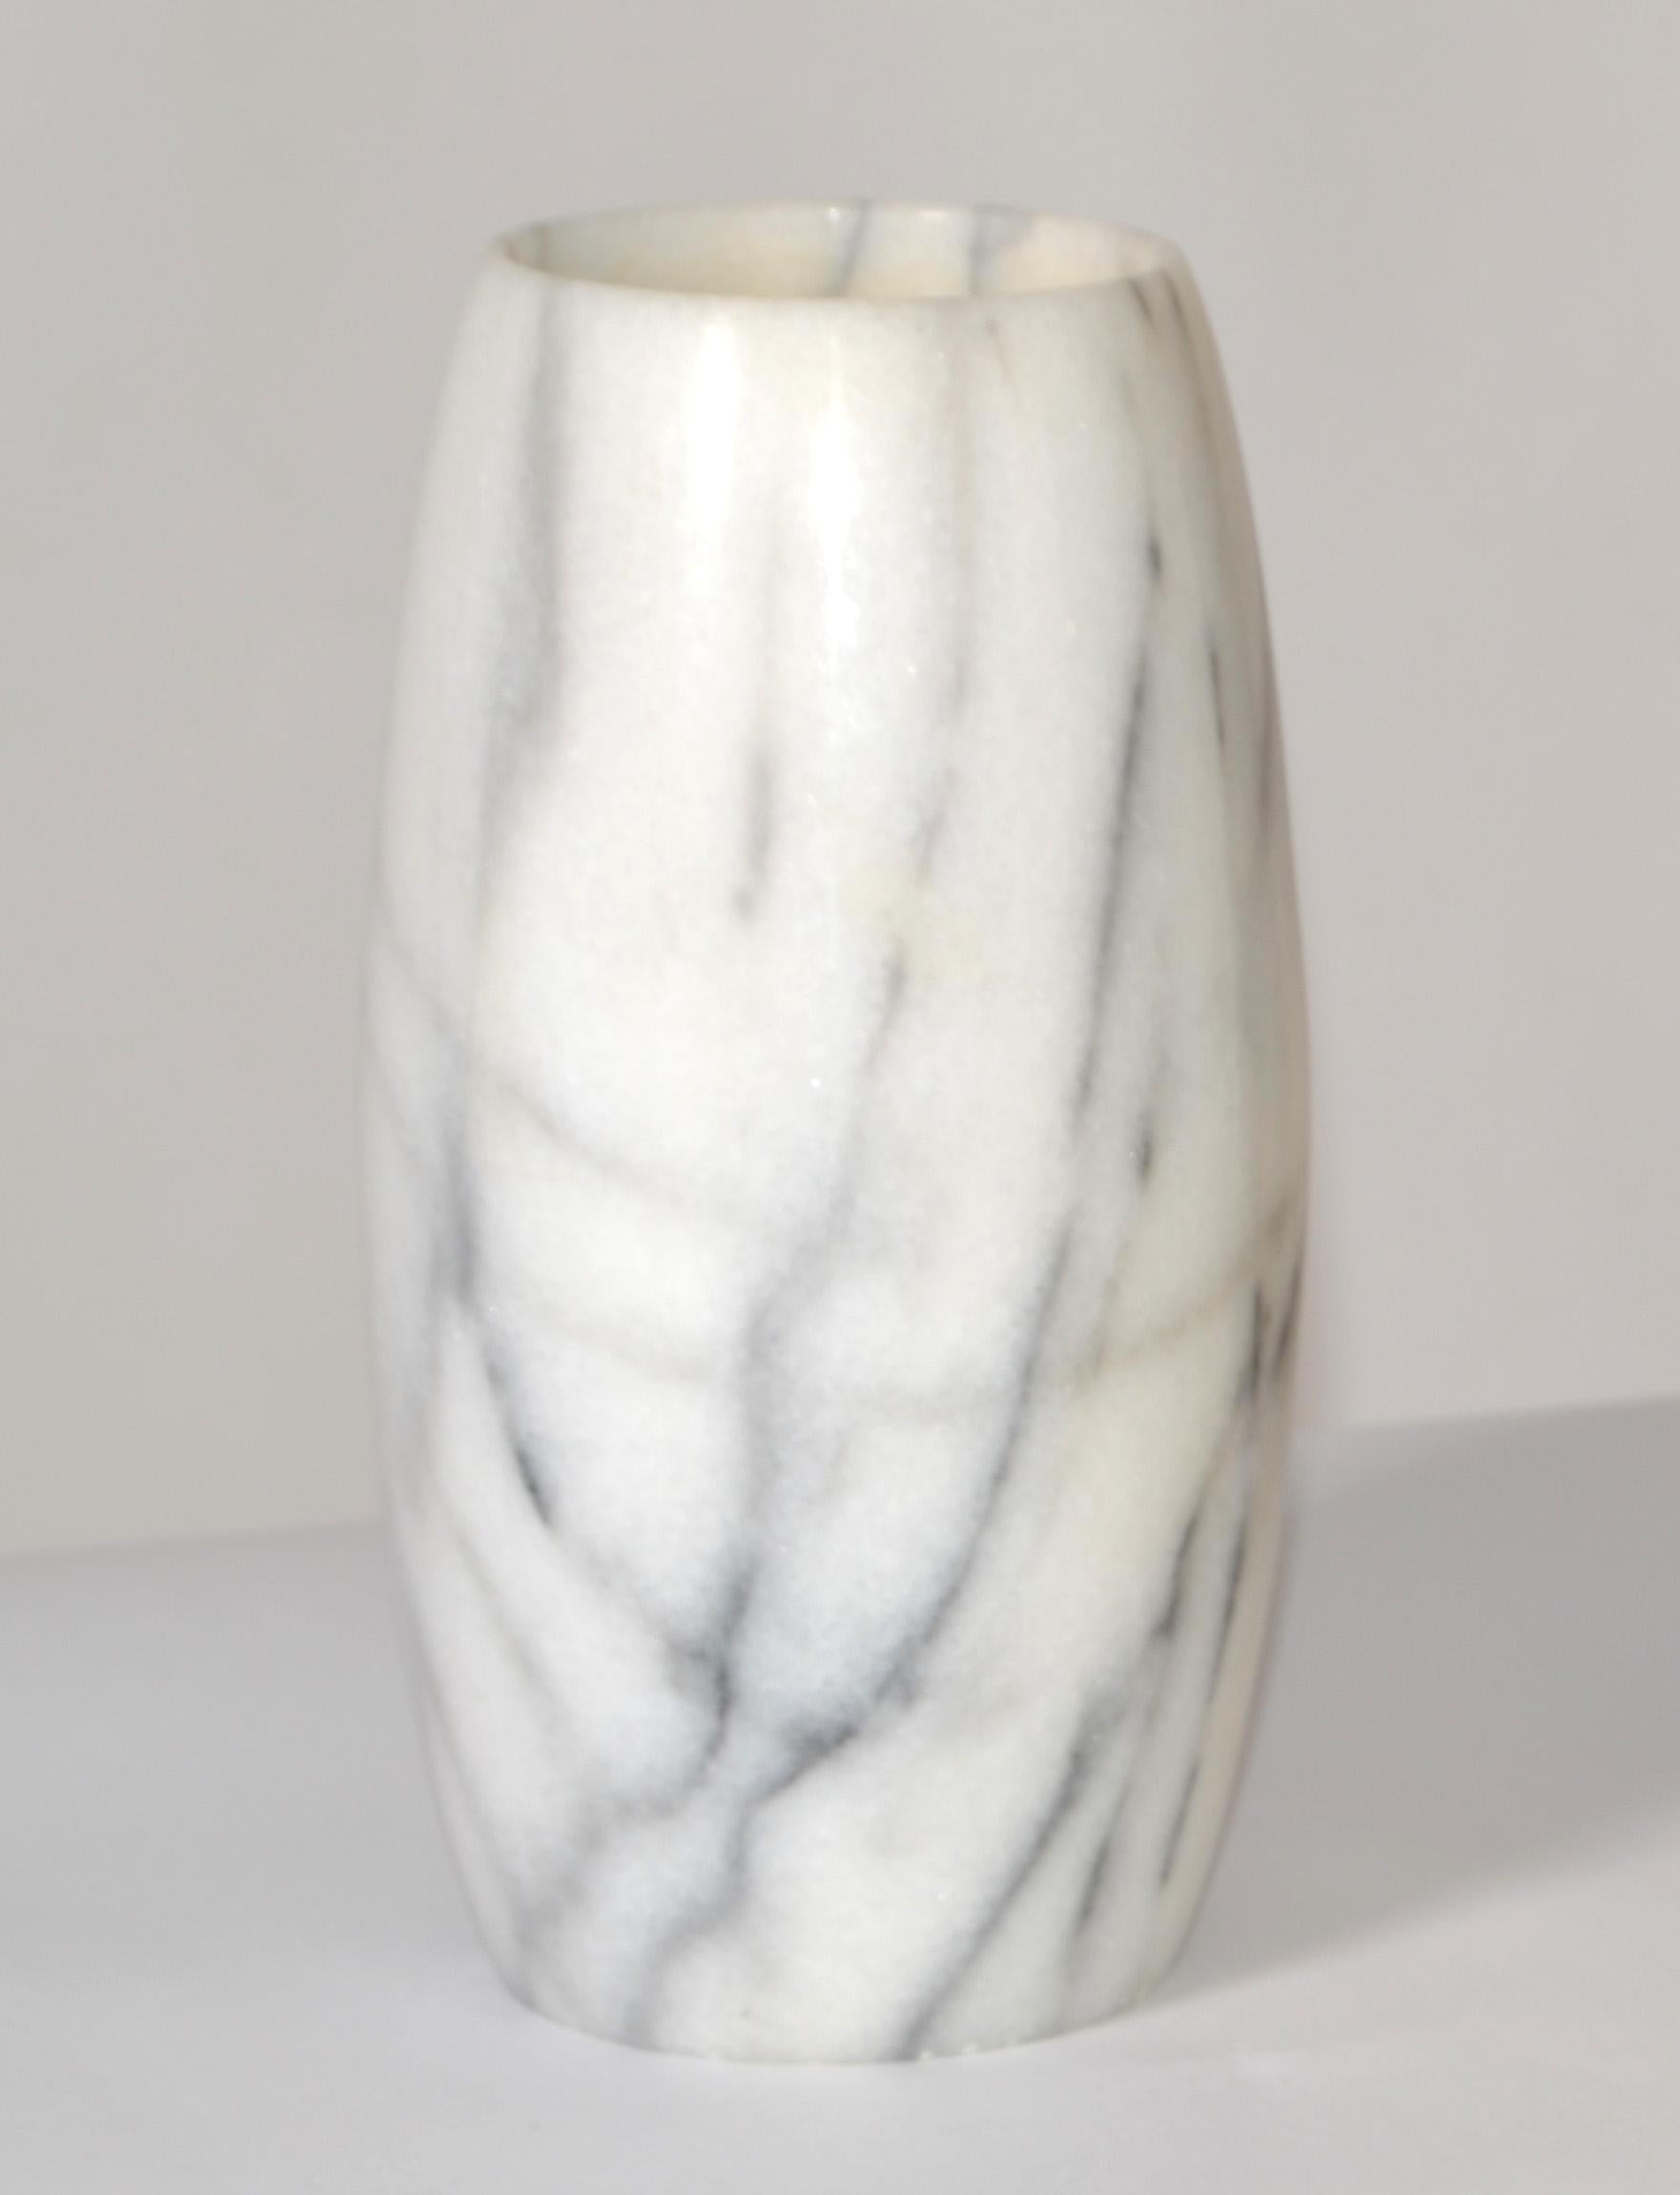 Vase en marbre de Carrare blanc veiné, sculpté à la main, du 20e siècle Mid-Century Modern, récipient fabriqué en Italie.
Ce vase est d'une facture étonnante, très décoratif sur une table italienne classique.
En très bon état vintage avec quelques